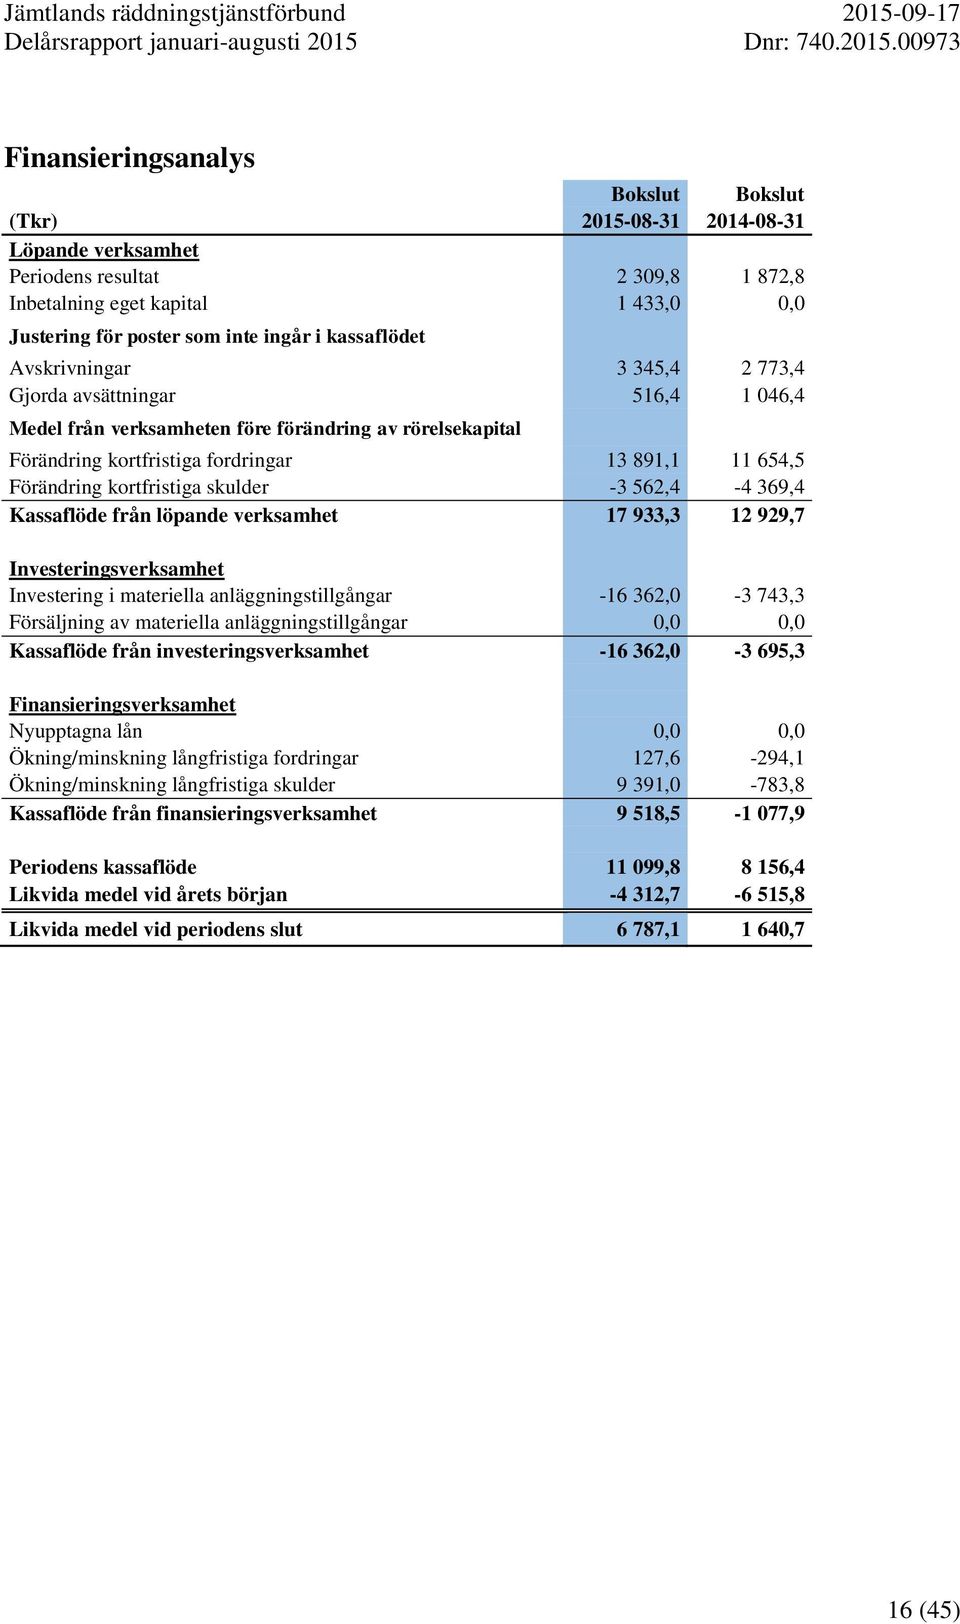 kortfristiga skulder -3 562,4-4 369,4 Kassaflöde från löpande verksamhet 17 933,3 12 929,7 Investeringsverksamhet Investering i materiella anläggningstillgångar -16 362,0-3 743,3 Försäljning av